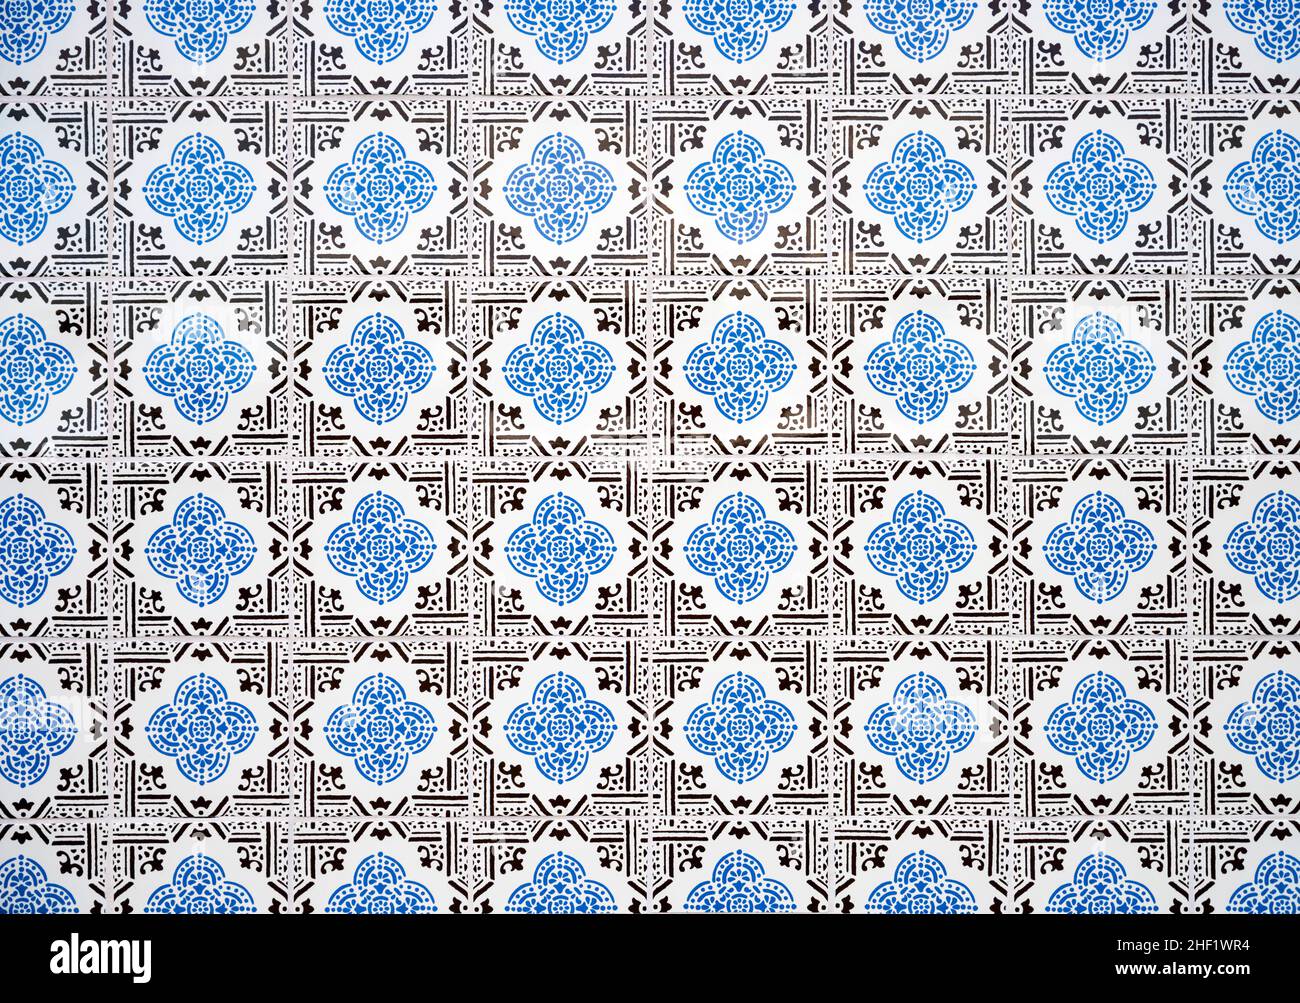 Azulejo ist eine Form von portugiesischen und spanischen verzinnglasierten Keramikfliesen. Gefunden auf dem Innen-und Außenbereich von Kirchen, Palästen, Häusern, scho Stockfoto